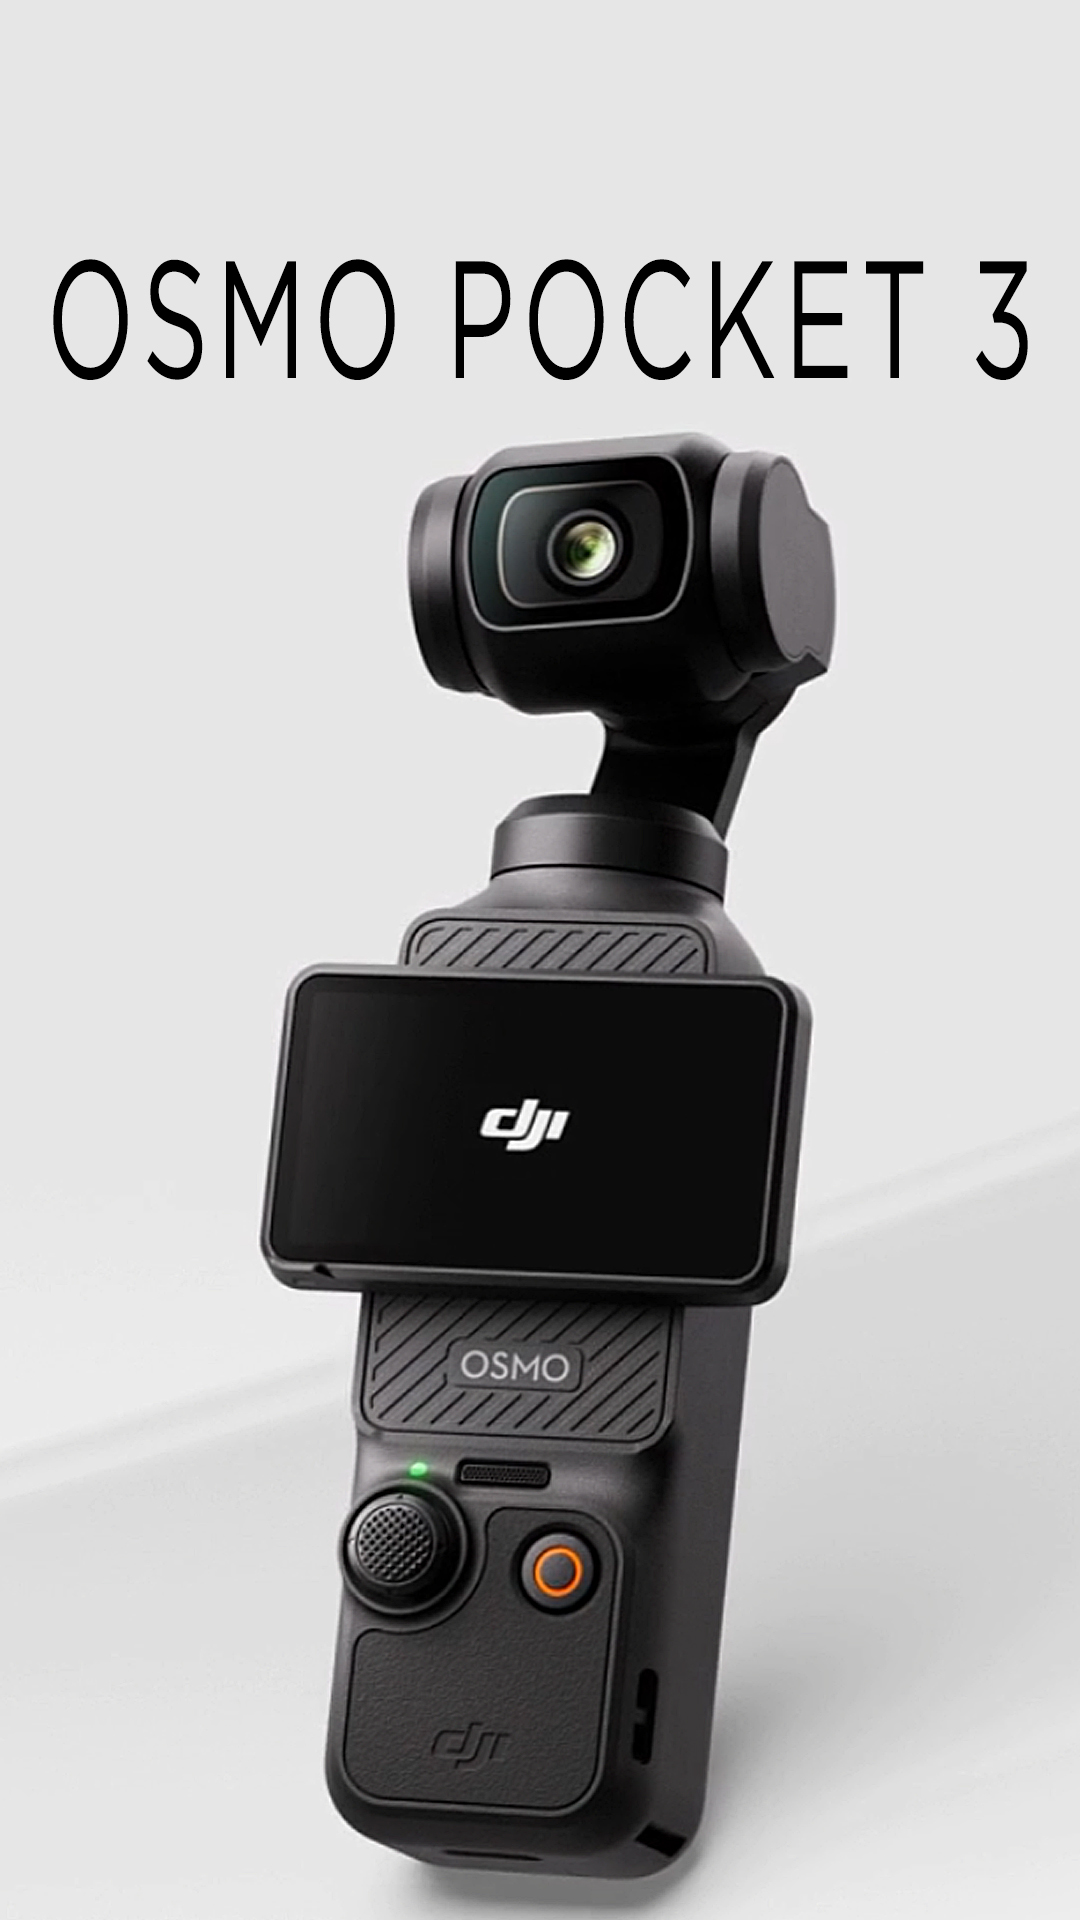 #OsmoPocket3 - новая ультракомпактная камера с 3-осевым стабилизатором от #DJI